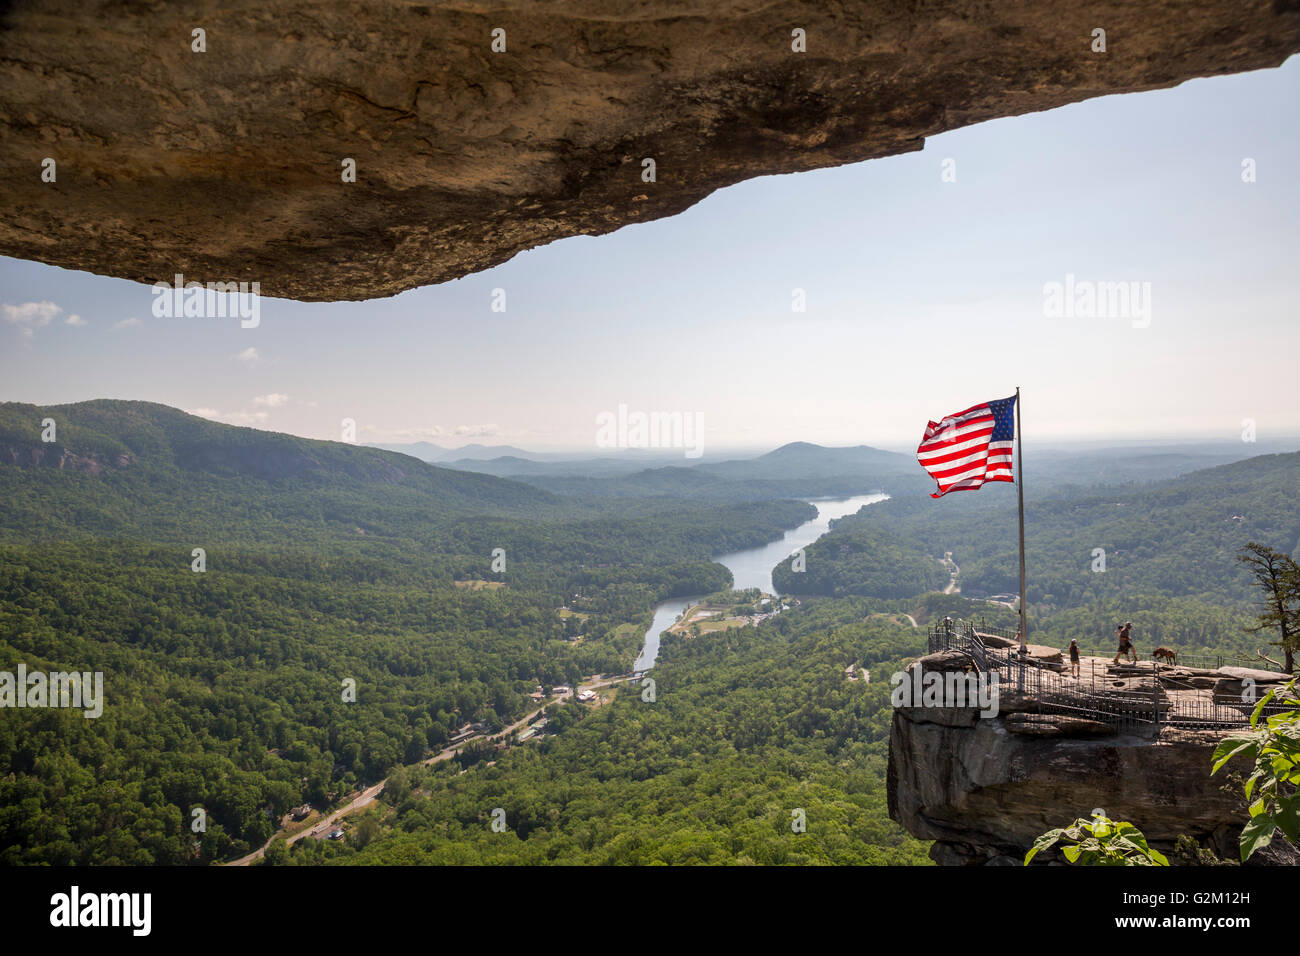 Chimney Rock, North Carolina - Chimney Rock State Park, una attrazione turistica con un 535 milioni di anni guglia di roccia. Foto Stock